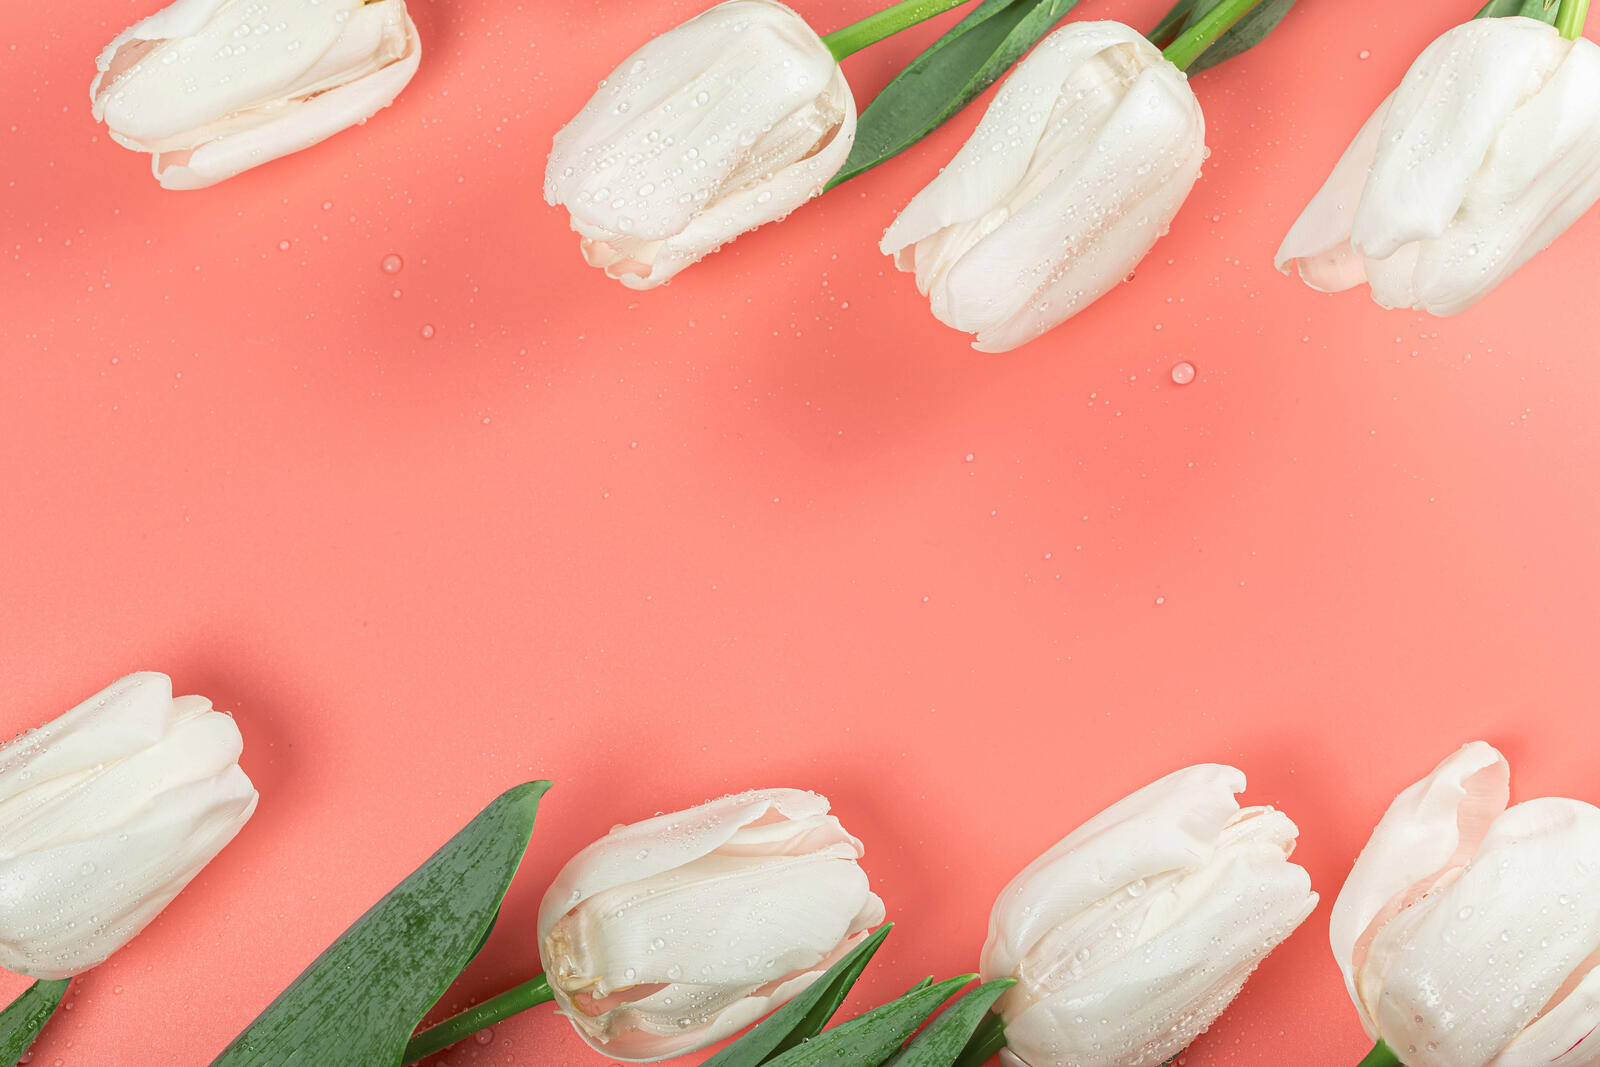 Wallpapers flower white tulips on the desktop